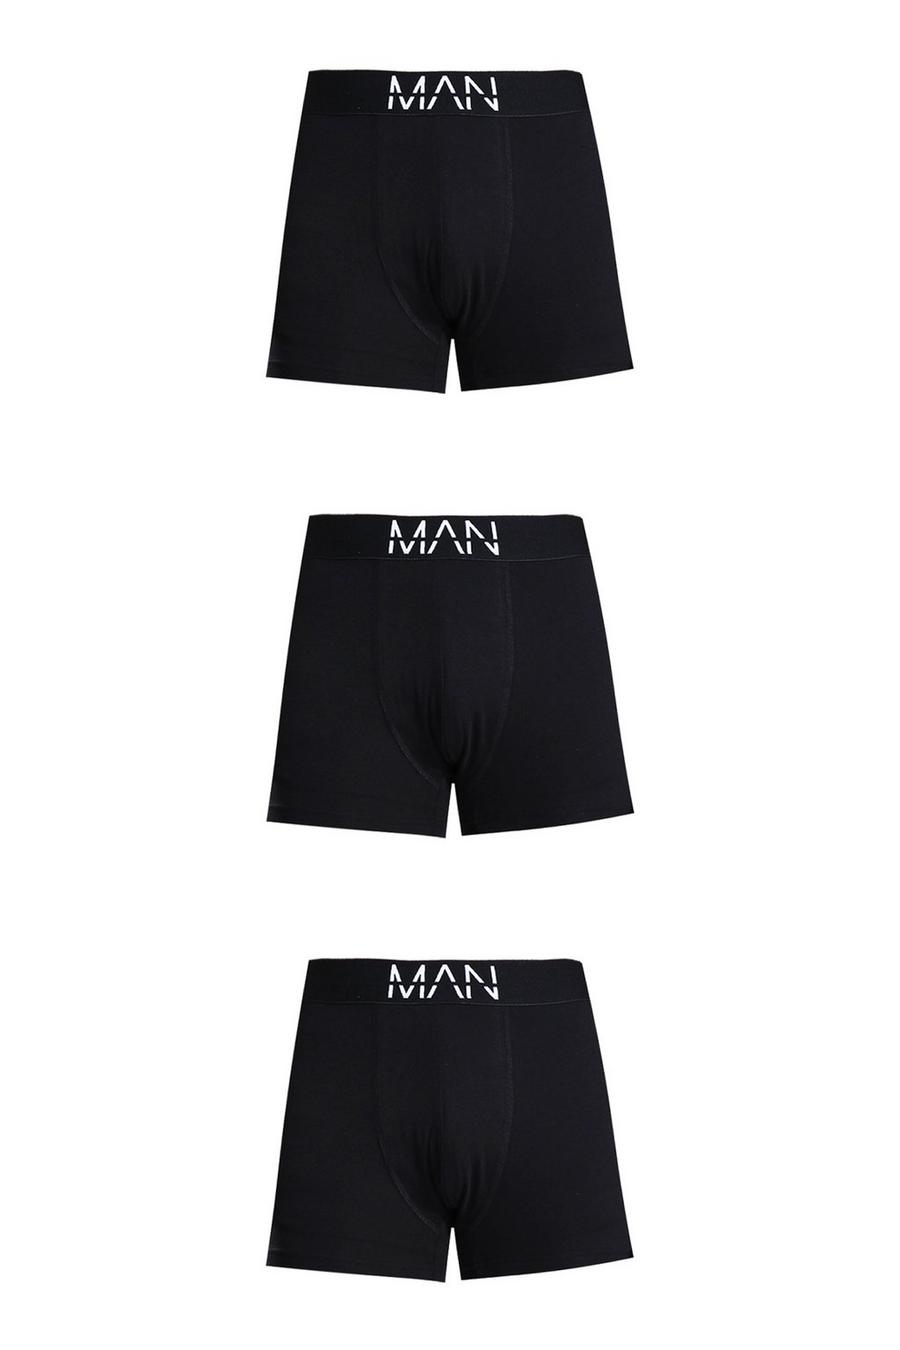 3er-Pack mittellange Man-Dash Boxershorts, Black schwarz image number 1